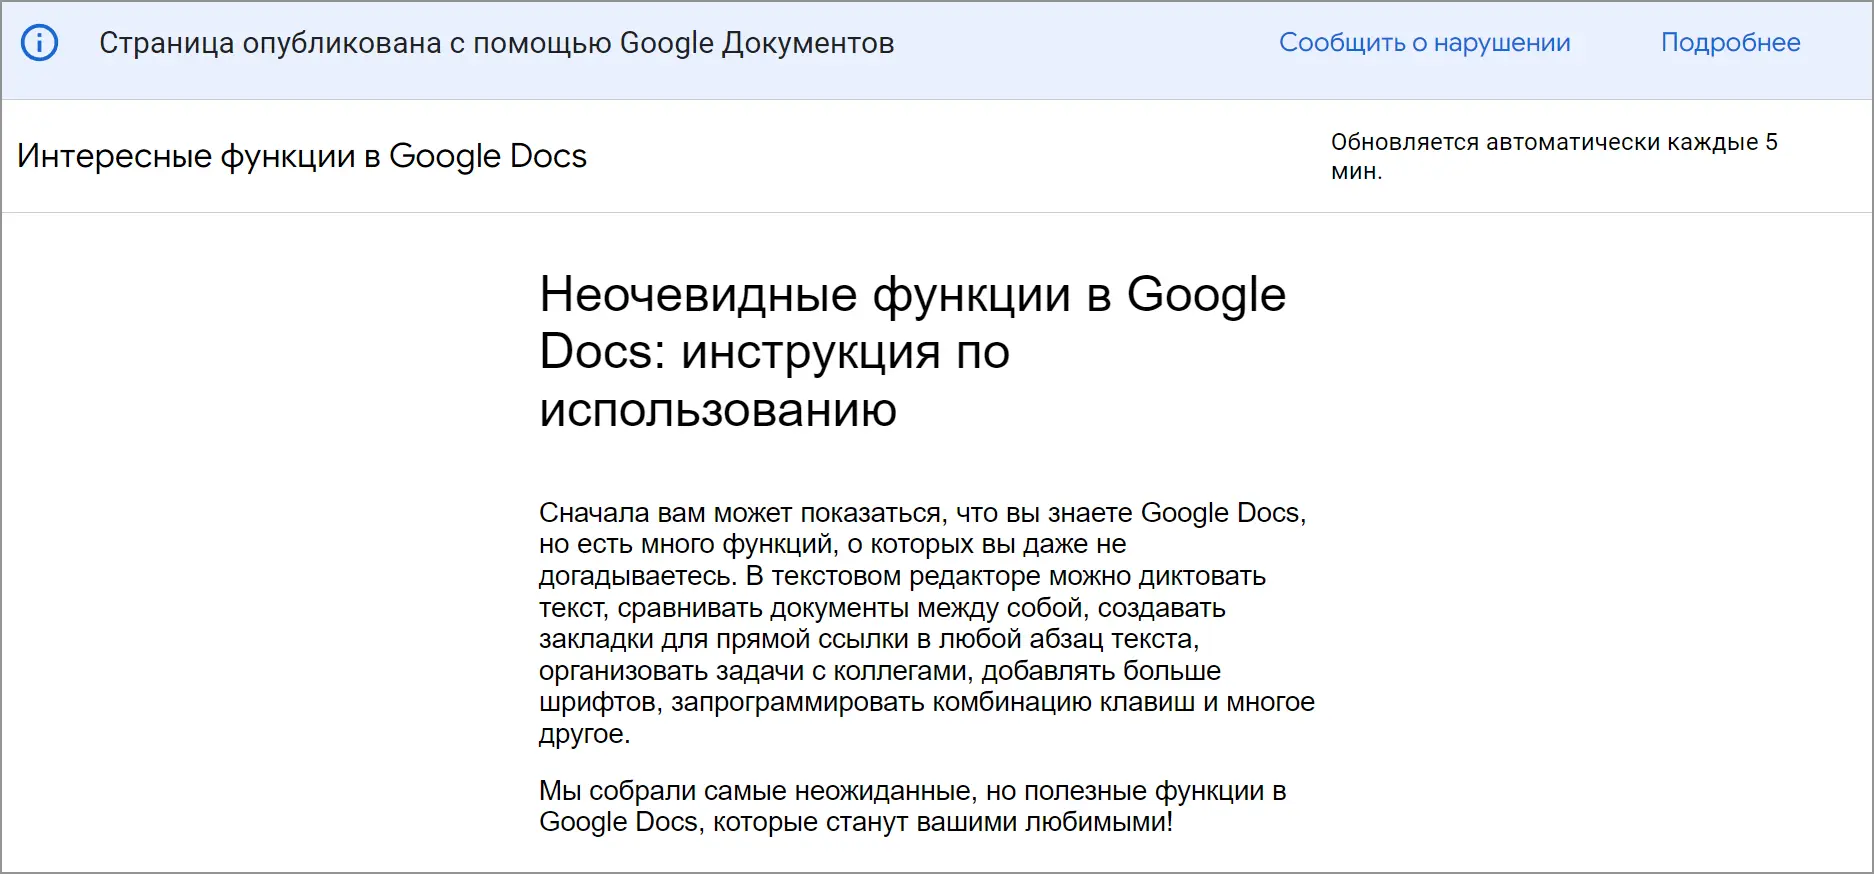 Как опубликовать в Интернете документ Google Docs